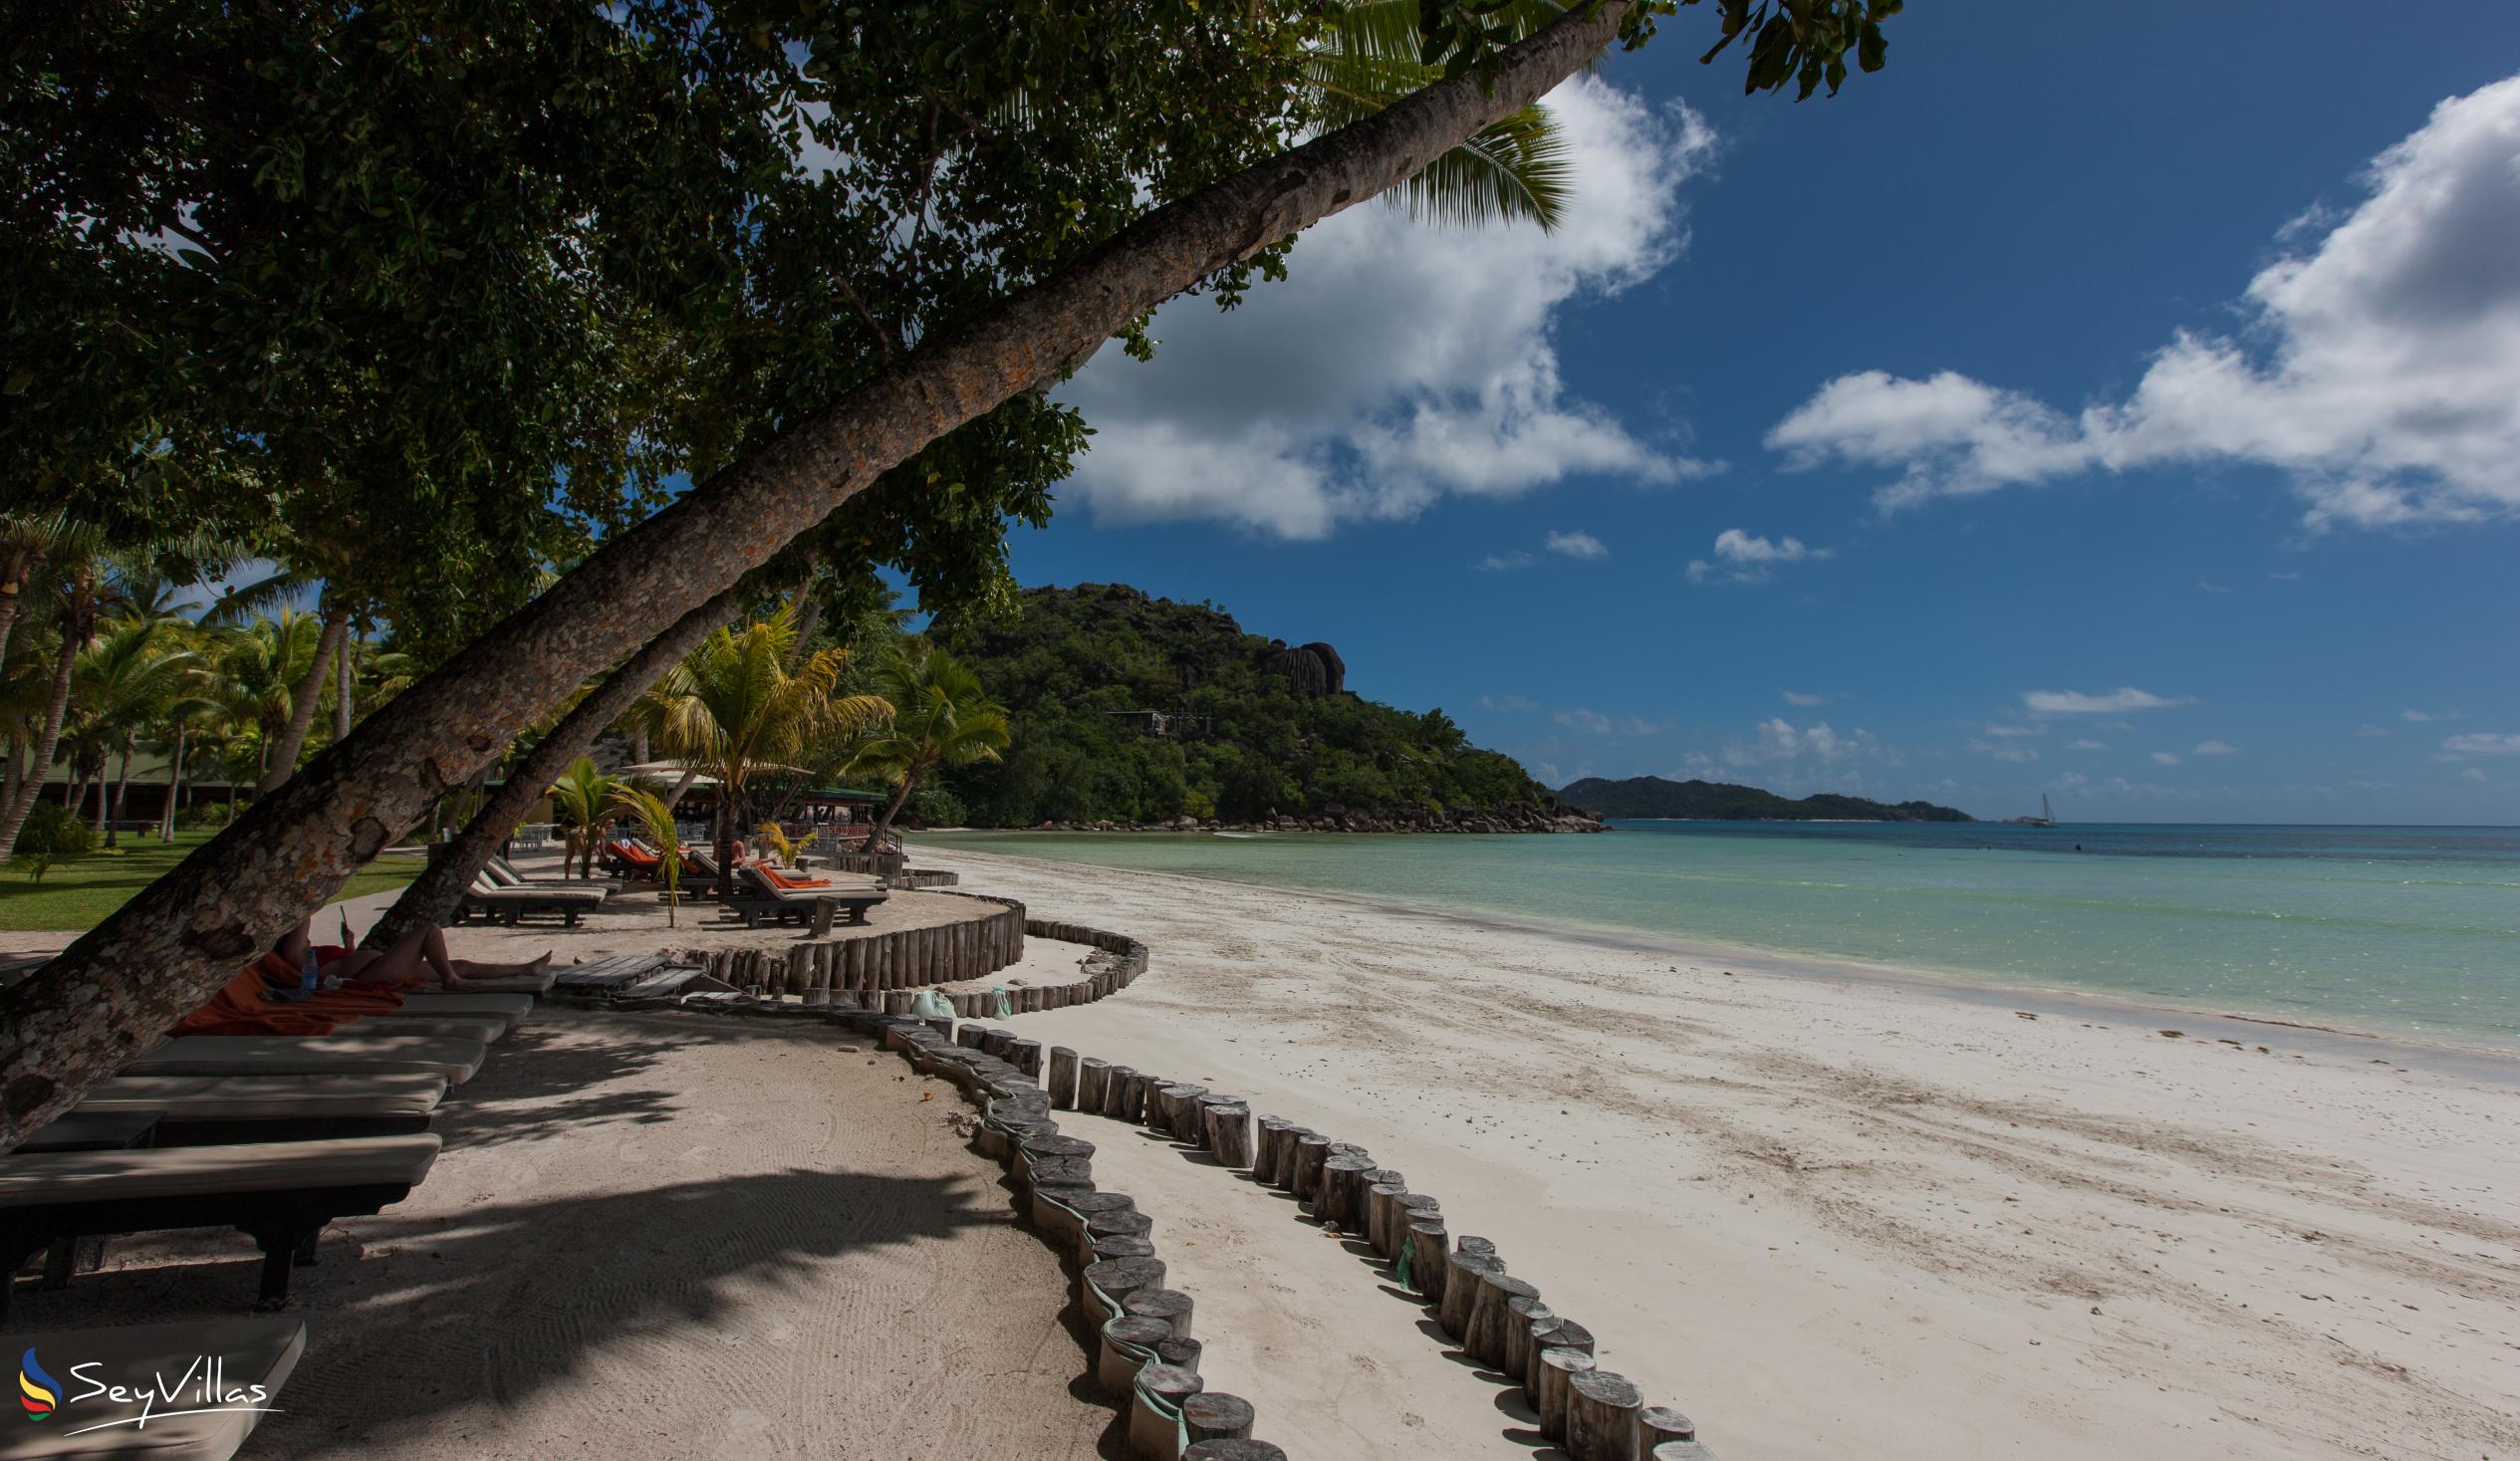 Photo 87: Paradise Sun Hotel - Outdoor area - Praslin (Seychelles)